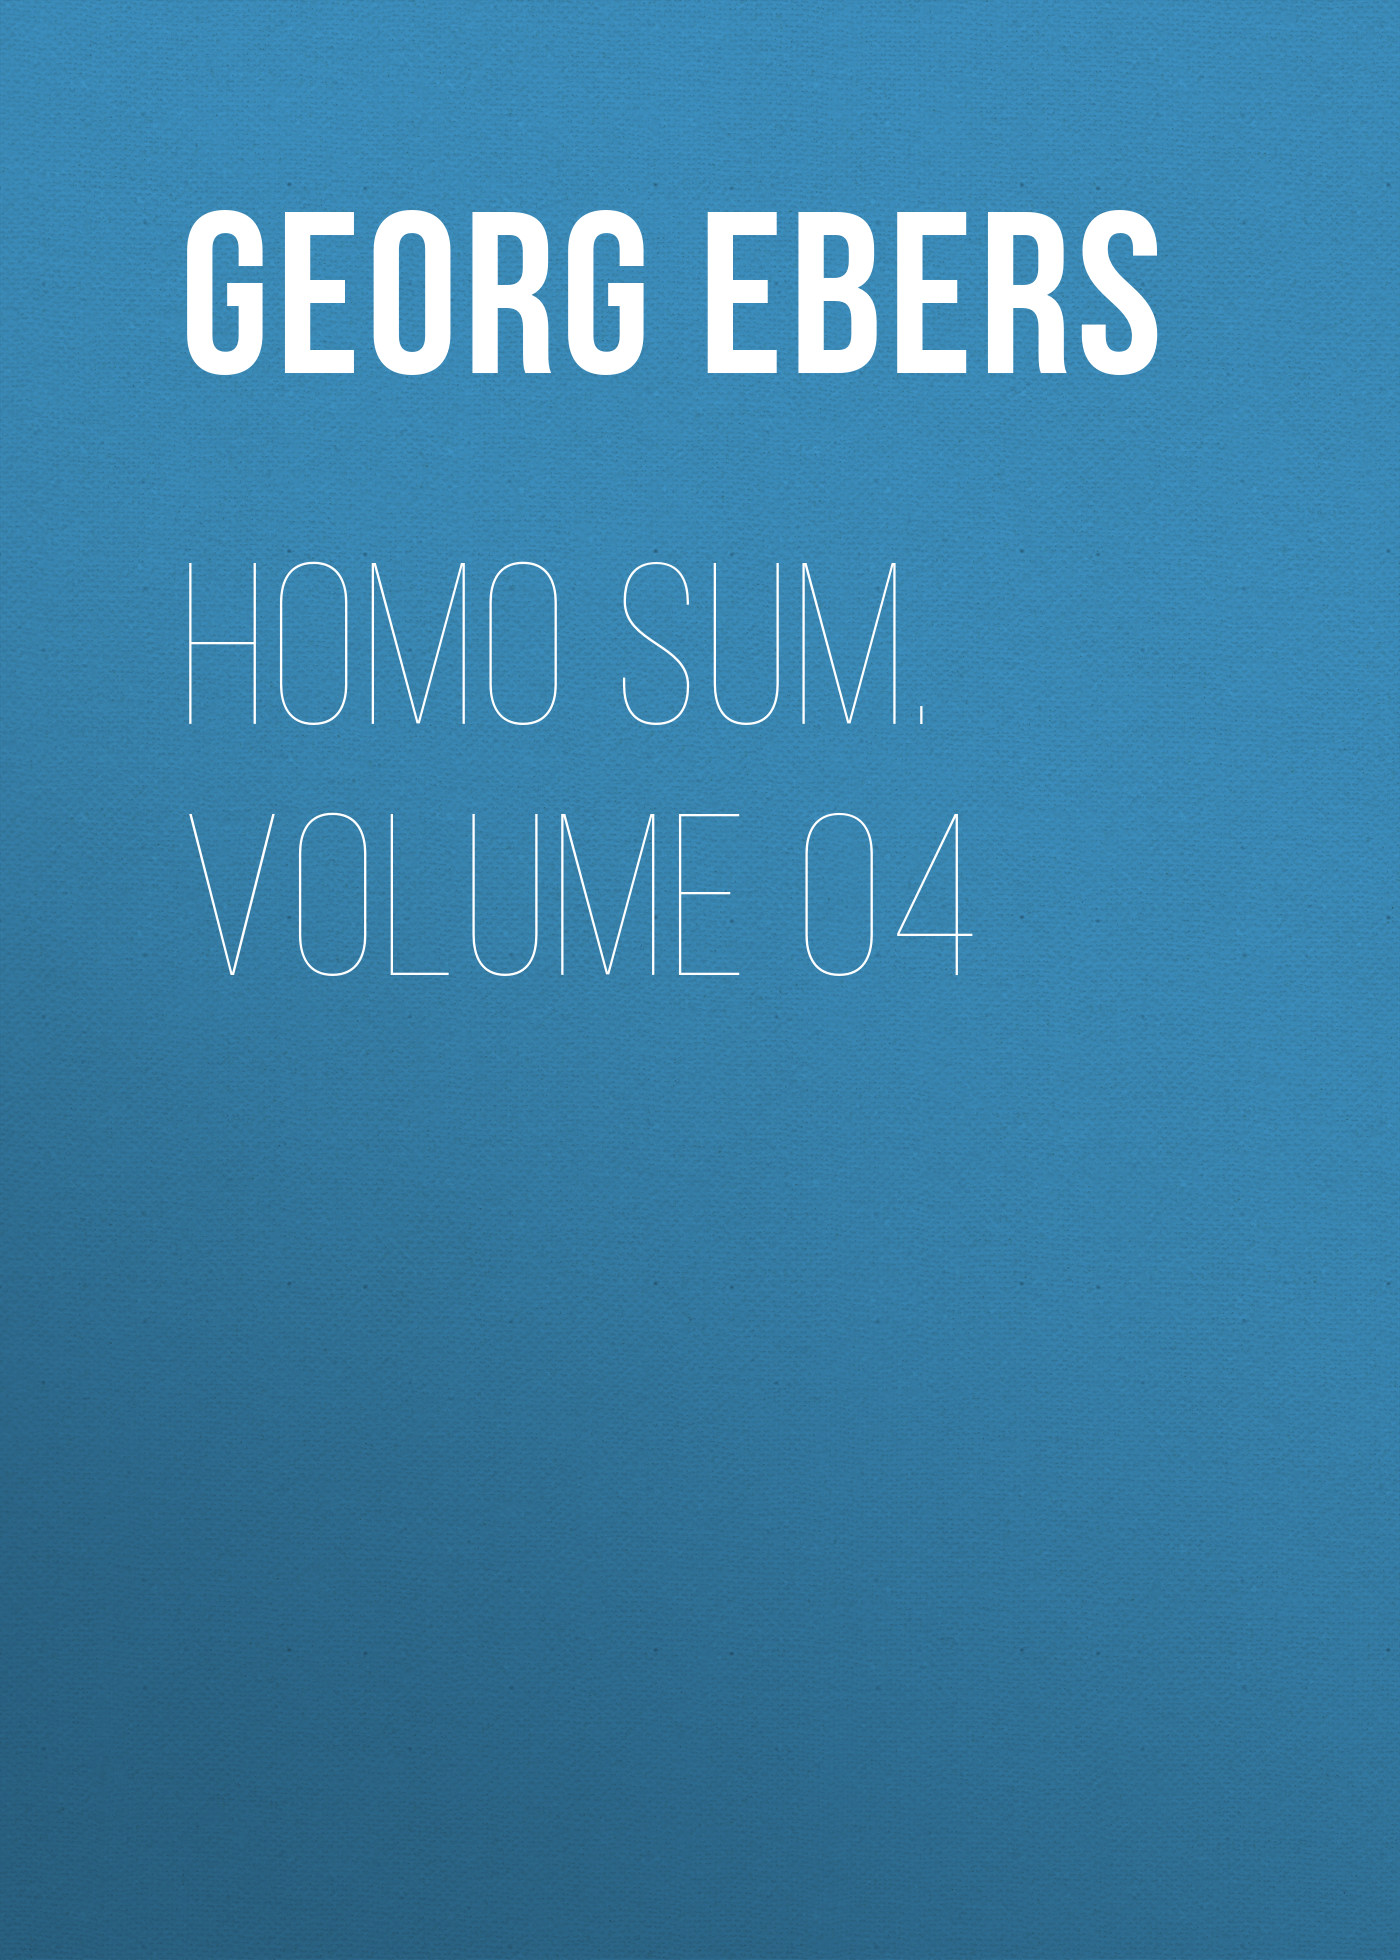 Книга Homo Sum. Volume 04 из серии , созданная Georg Ebers, может относится к жанру Зарубежная классика, Зарубежная старинная литература. Стоимость электронной книги Homo Sum. Volume 04 с идентификатором 42627995 составляет 0 руб.